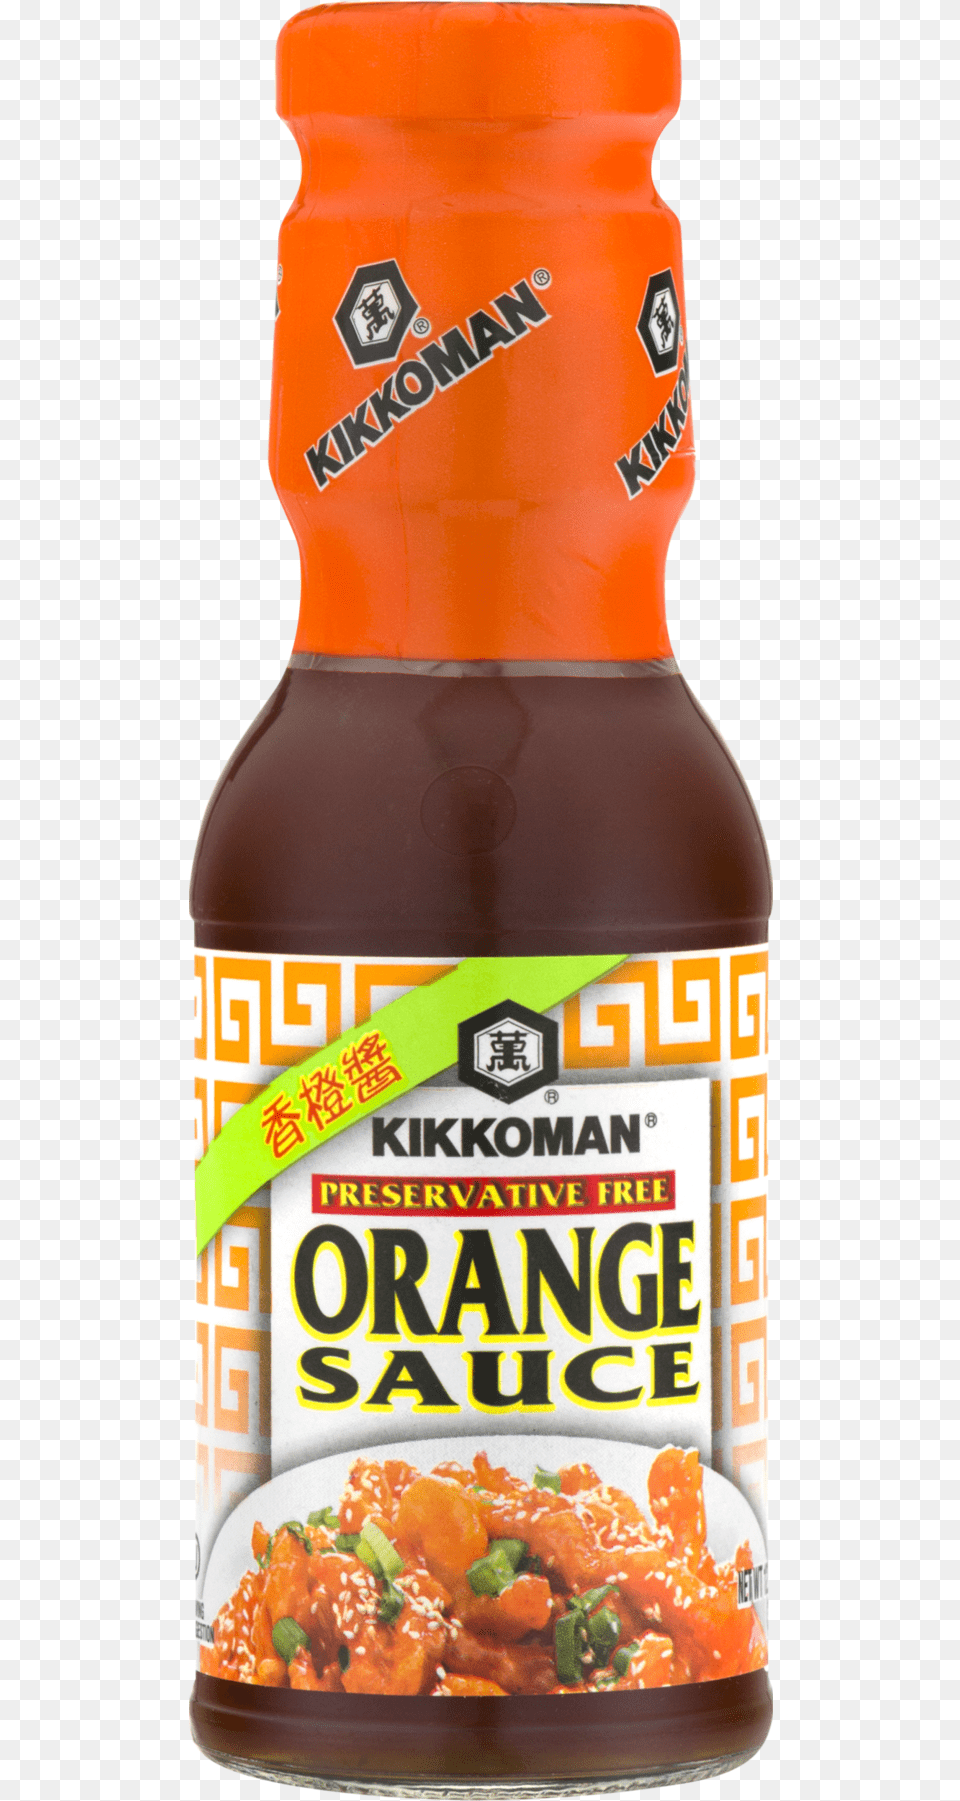 Transparent Orange Chicken Orange Sauce Kikkoman 125 Oz, Food, Ketchup Free Png